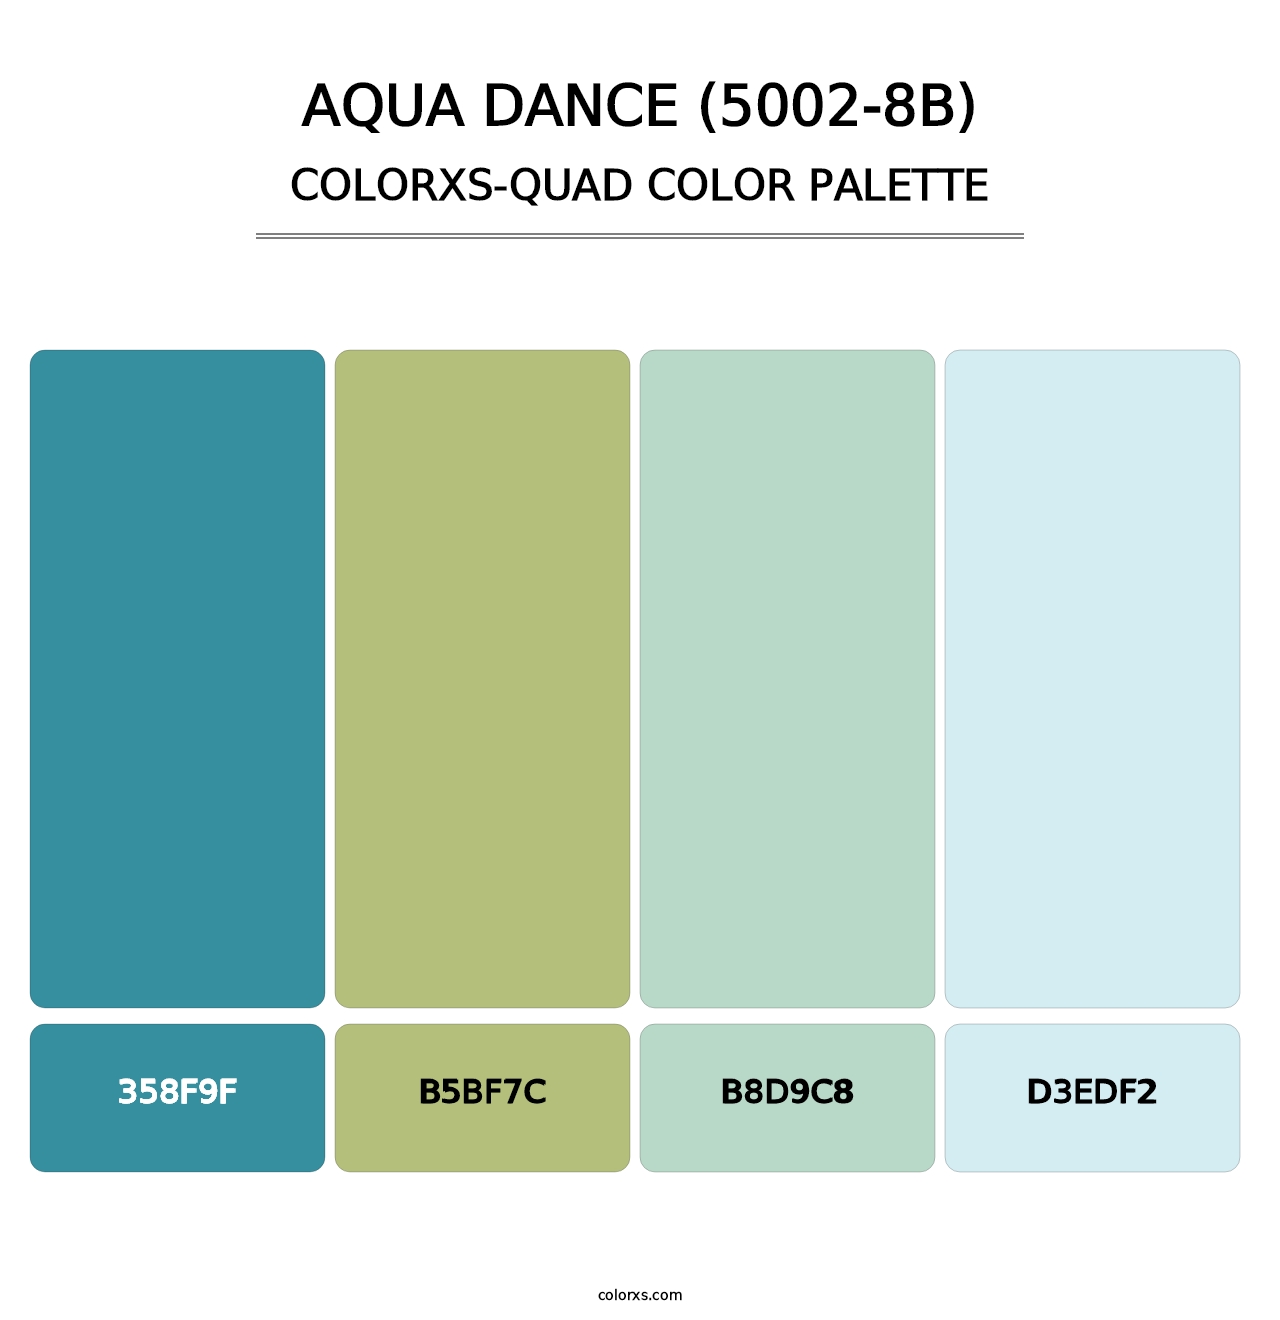 Aqua Dance (5002-8B) - Colorxs Quad Palette